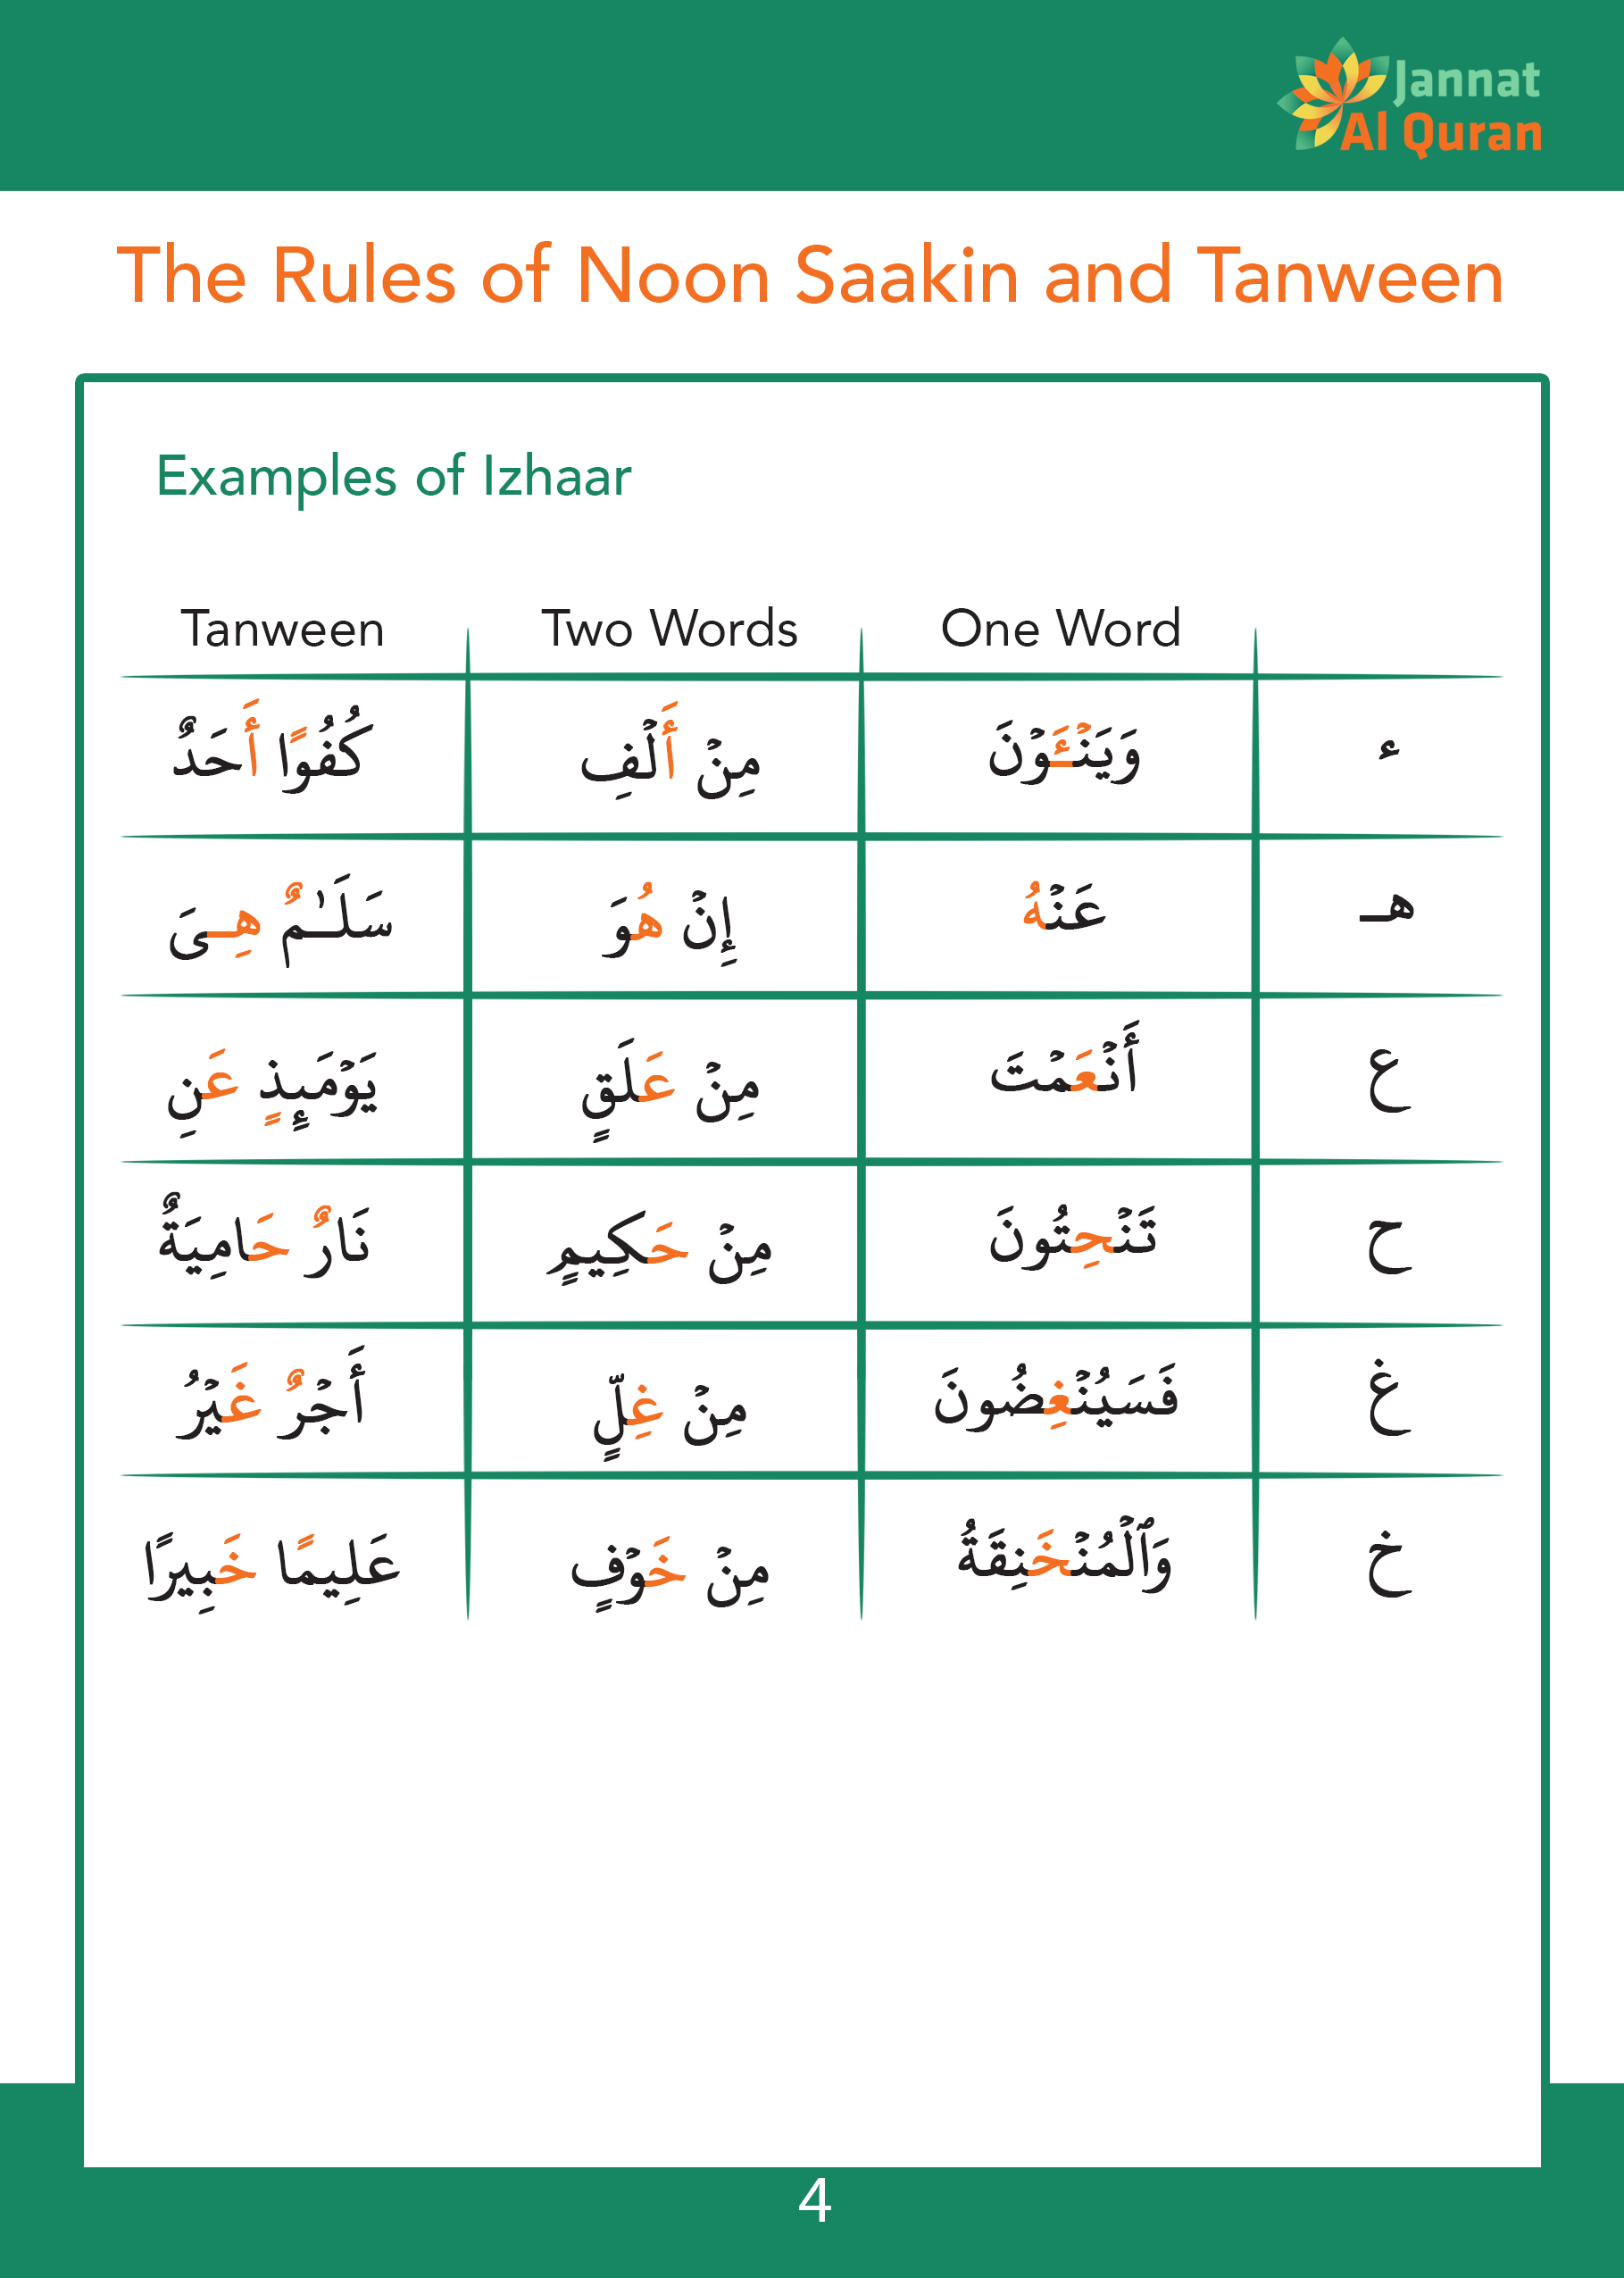 tajweed rules pdf in urdu